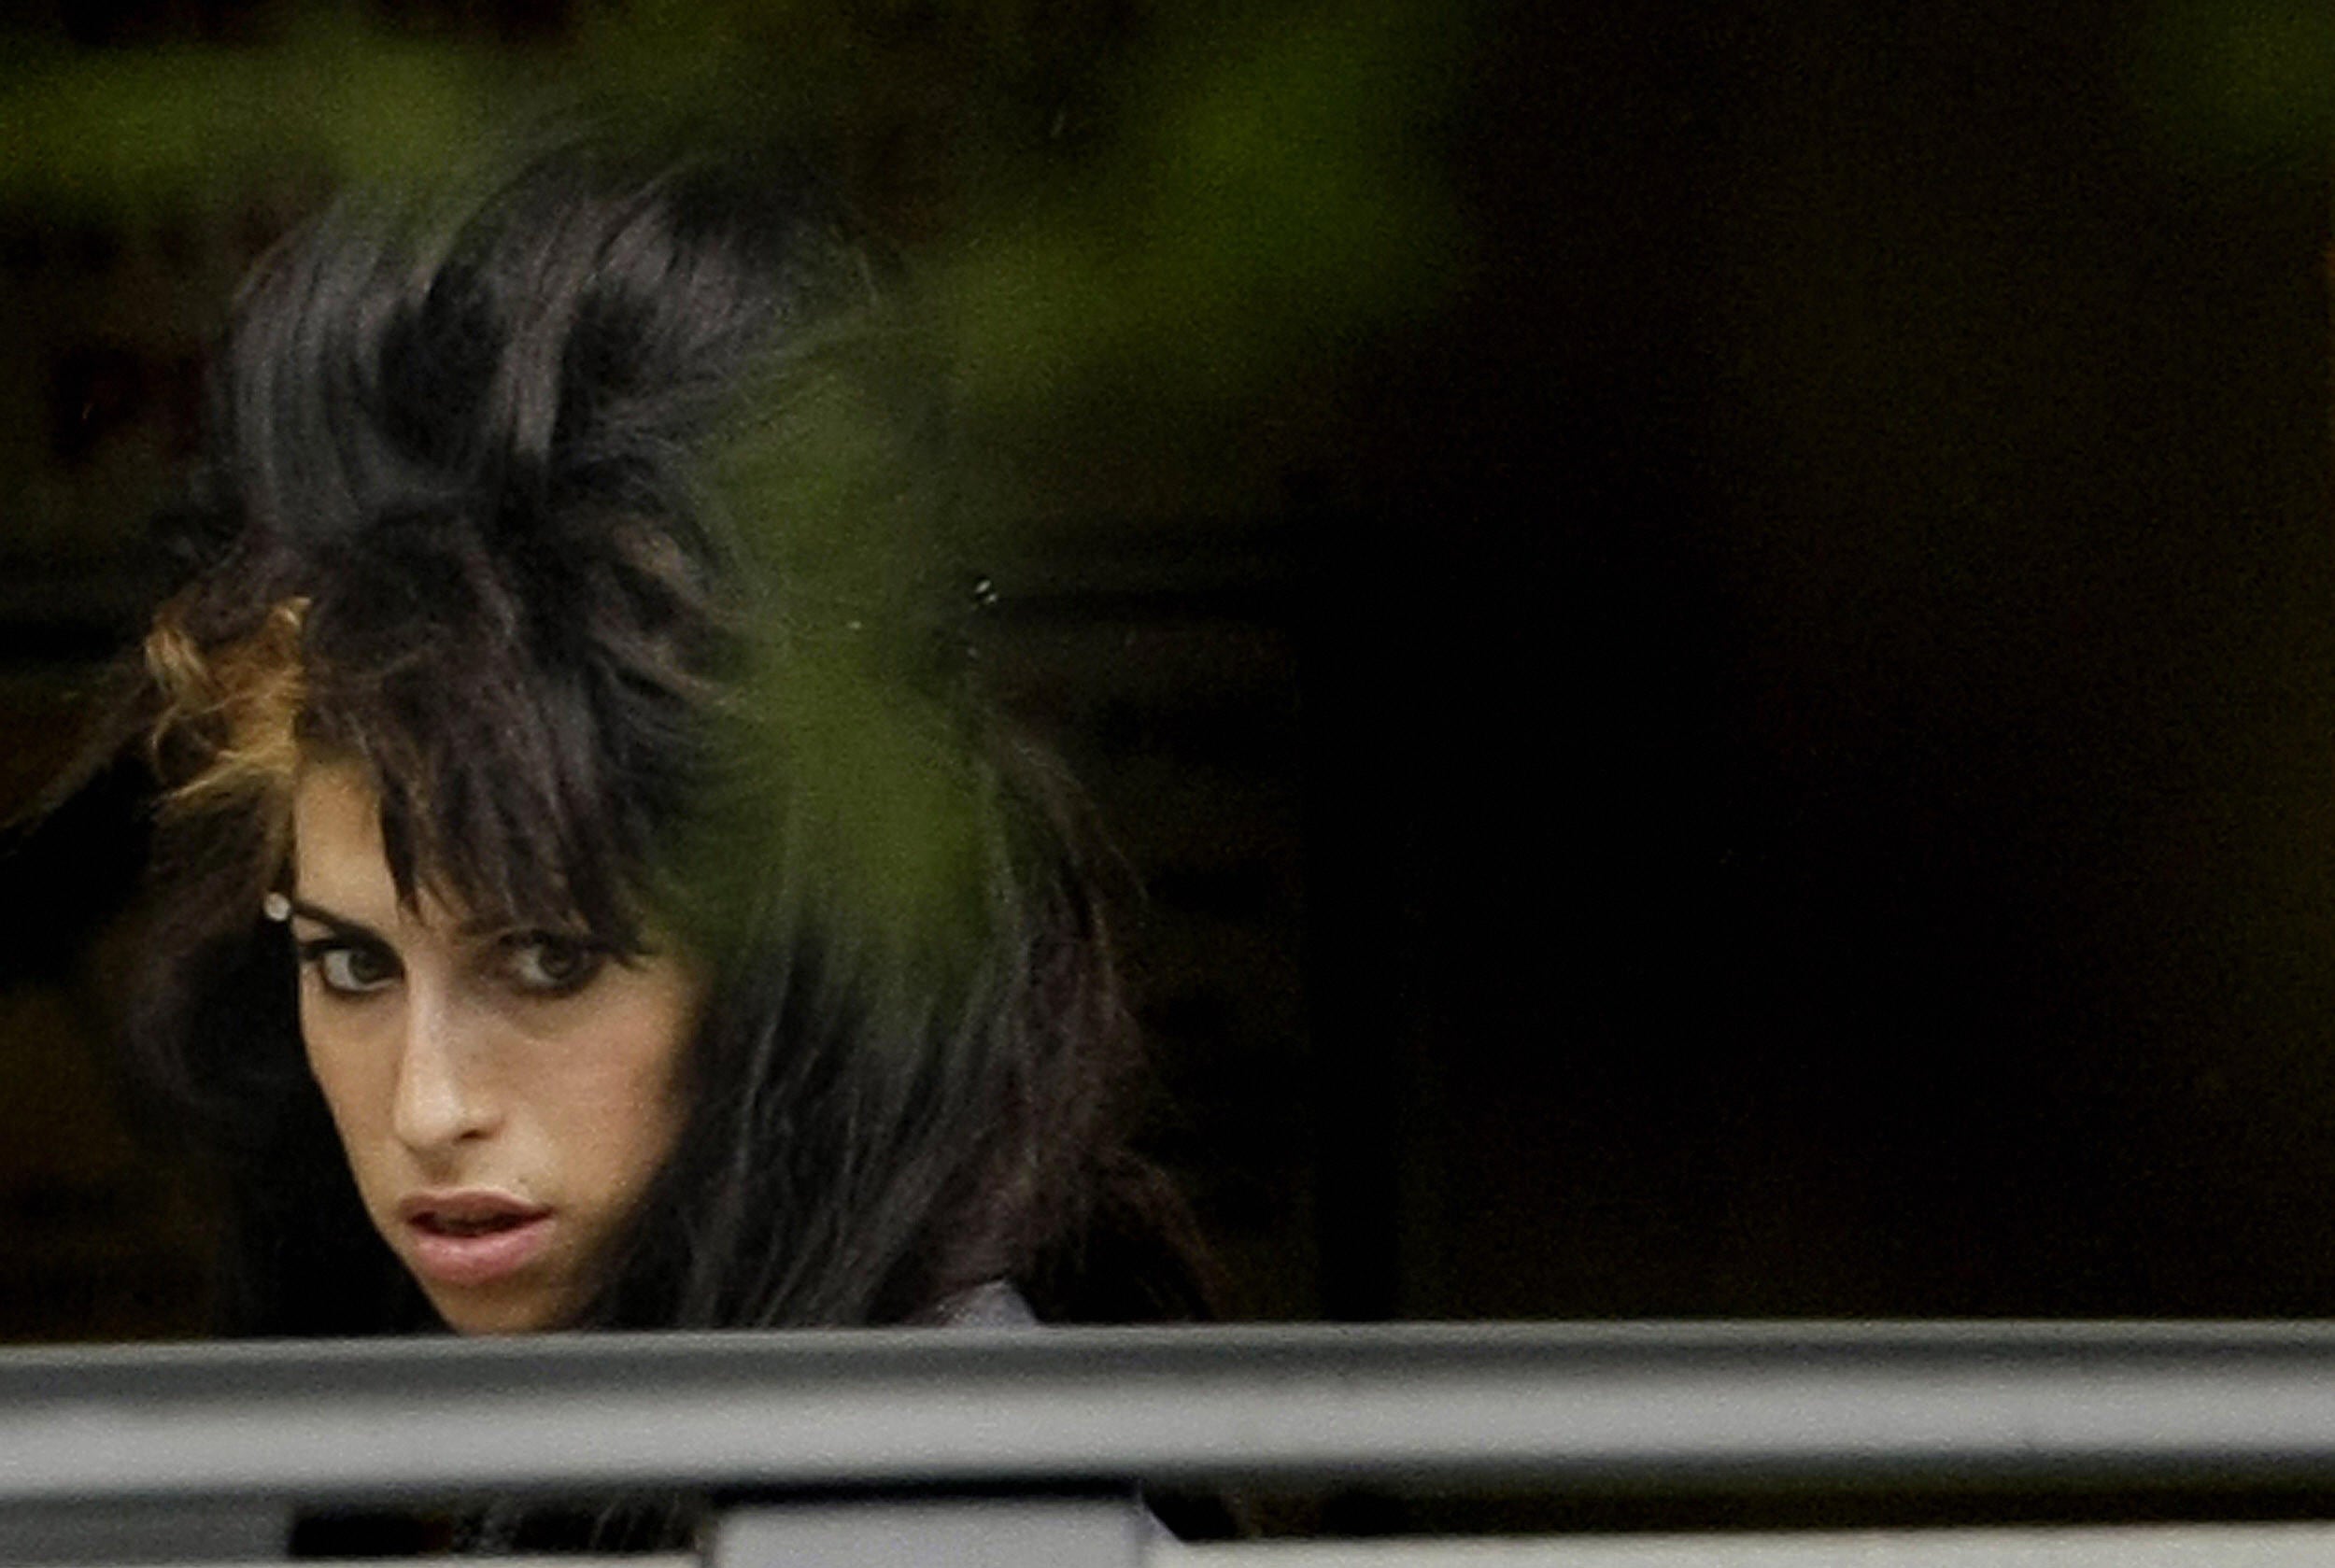 Giugno 2008. Amy Winehouse arriva alla Snaresbrook Crown Court di Londra per il processo al marito Blake Fielder-Civil accusato di aggressione e intralcio alla giustizia